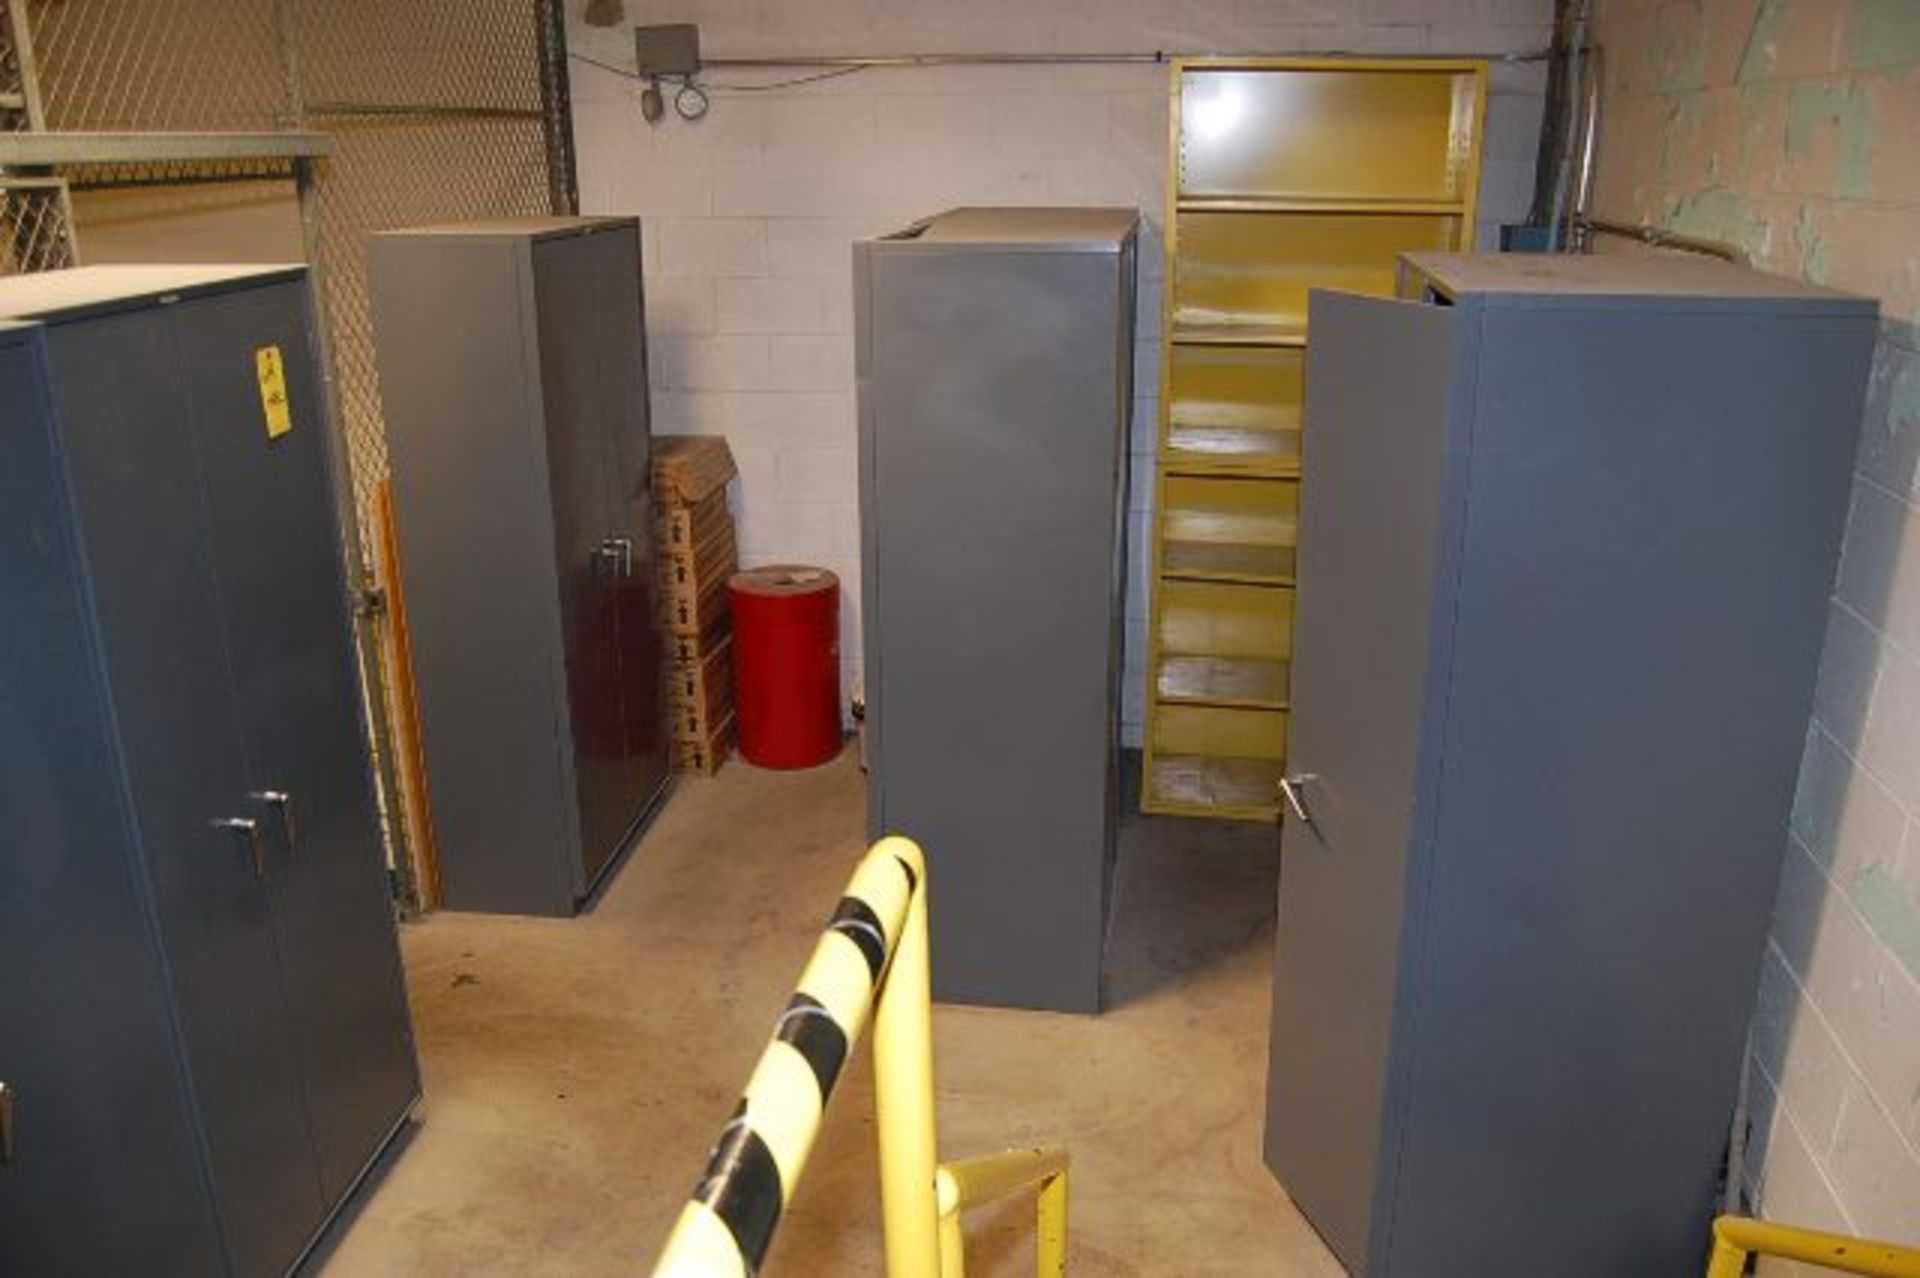 (6) Equipto 2-Door Storage Cabinets, 72 in. Height - Image 2 of 2